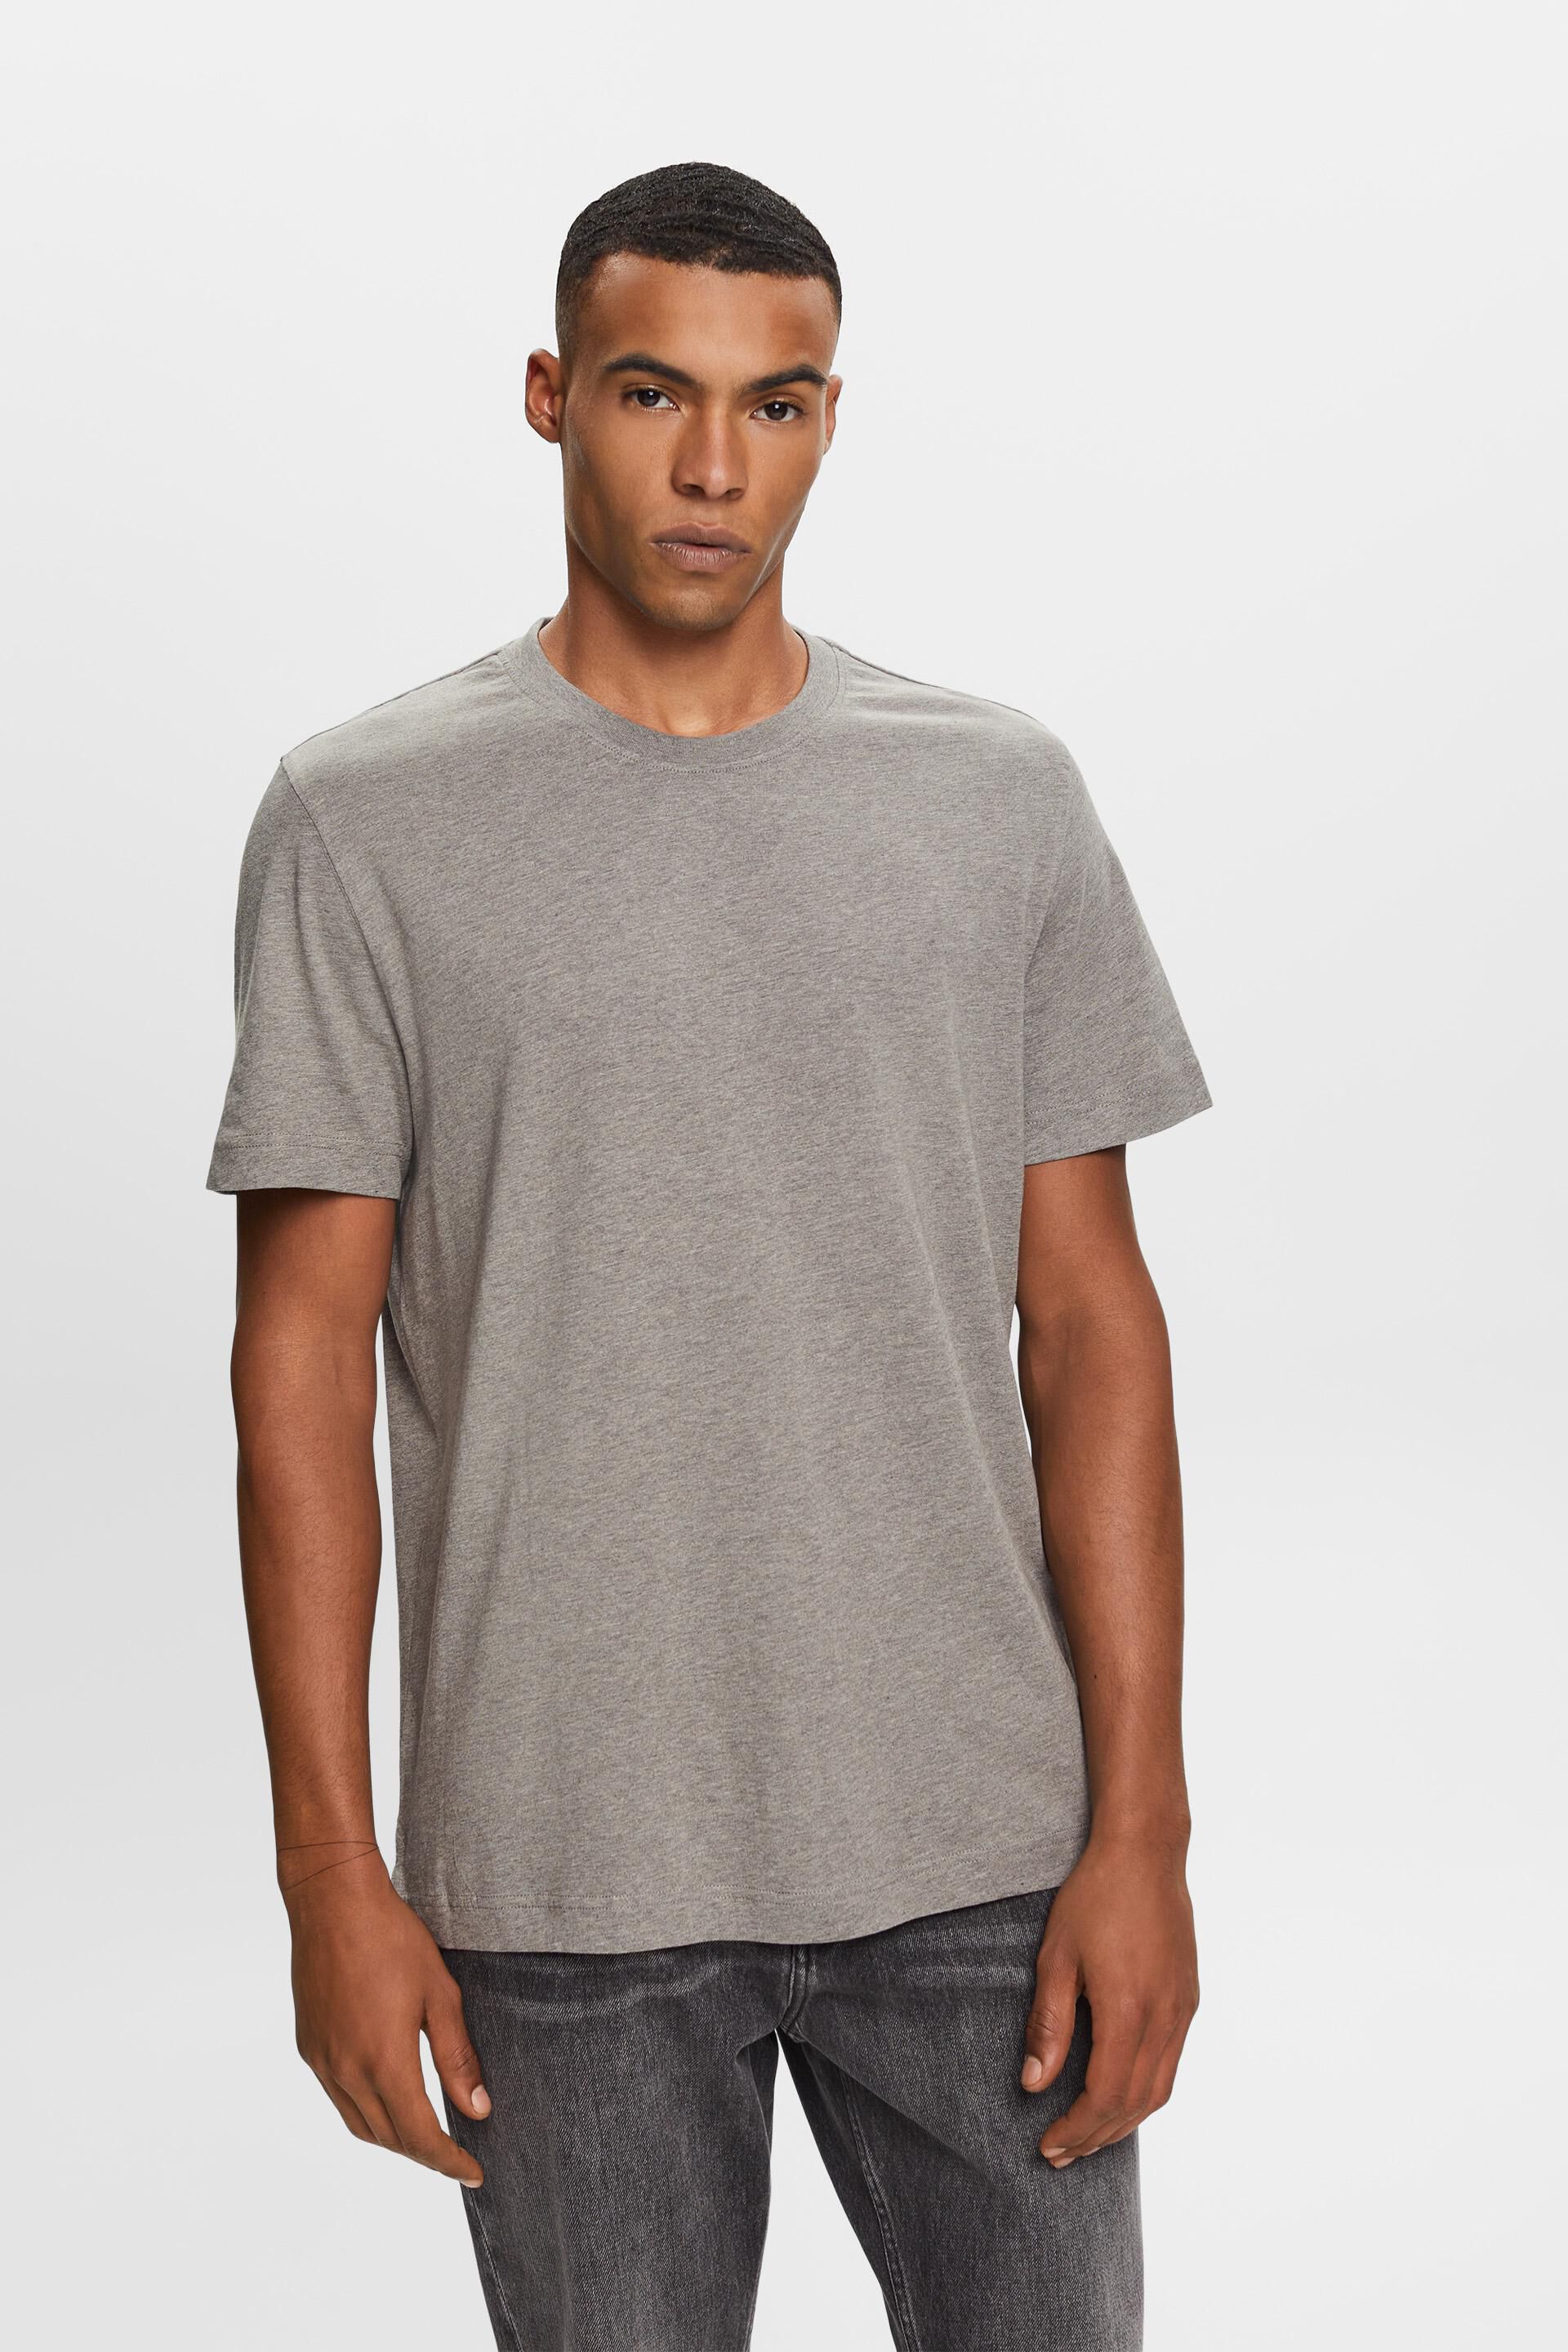 Esprit Crewneck 100% cotton t-shirt,